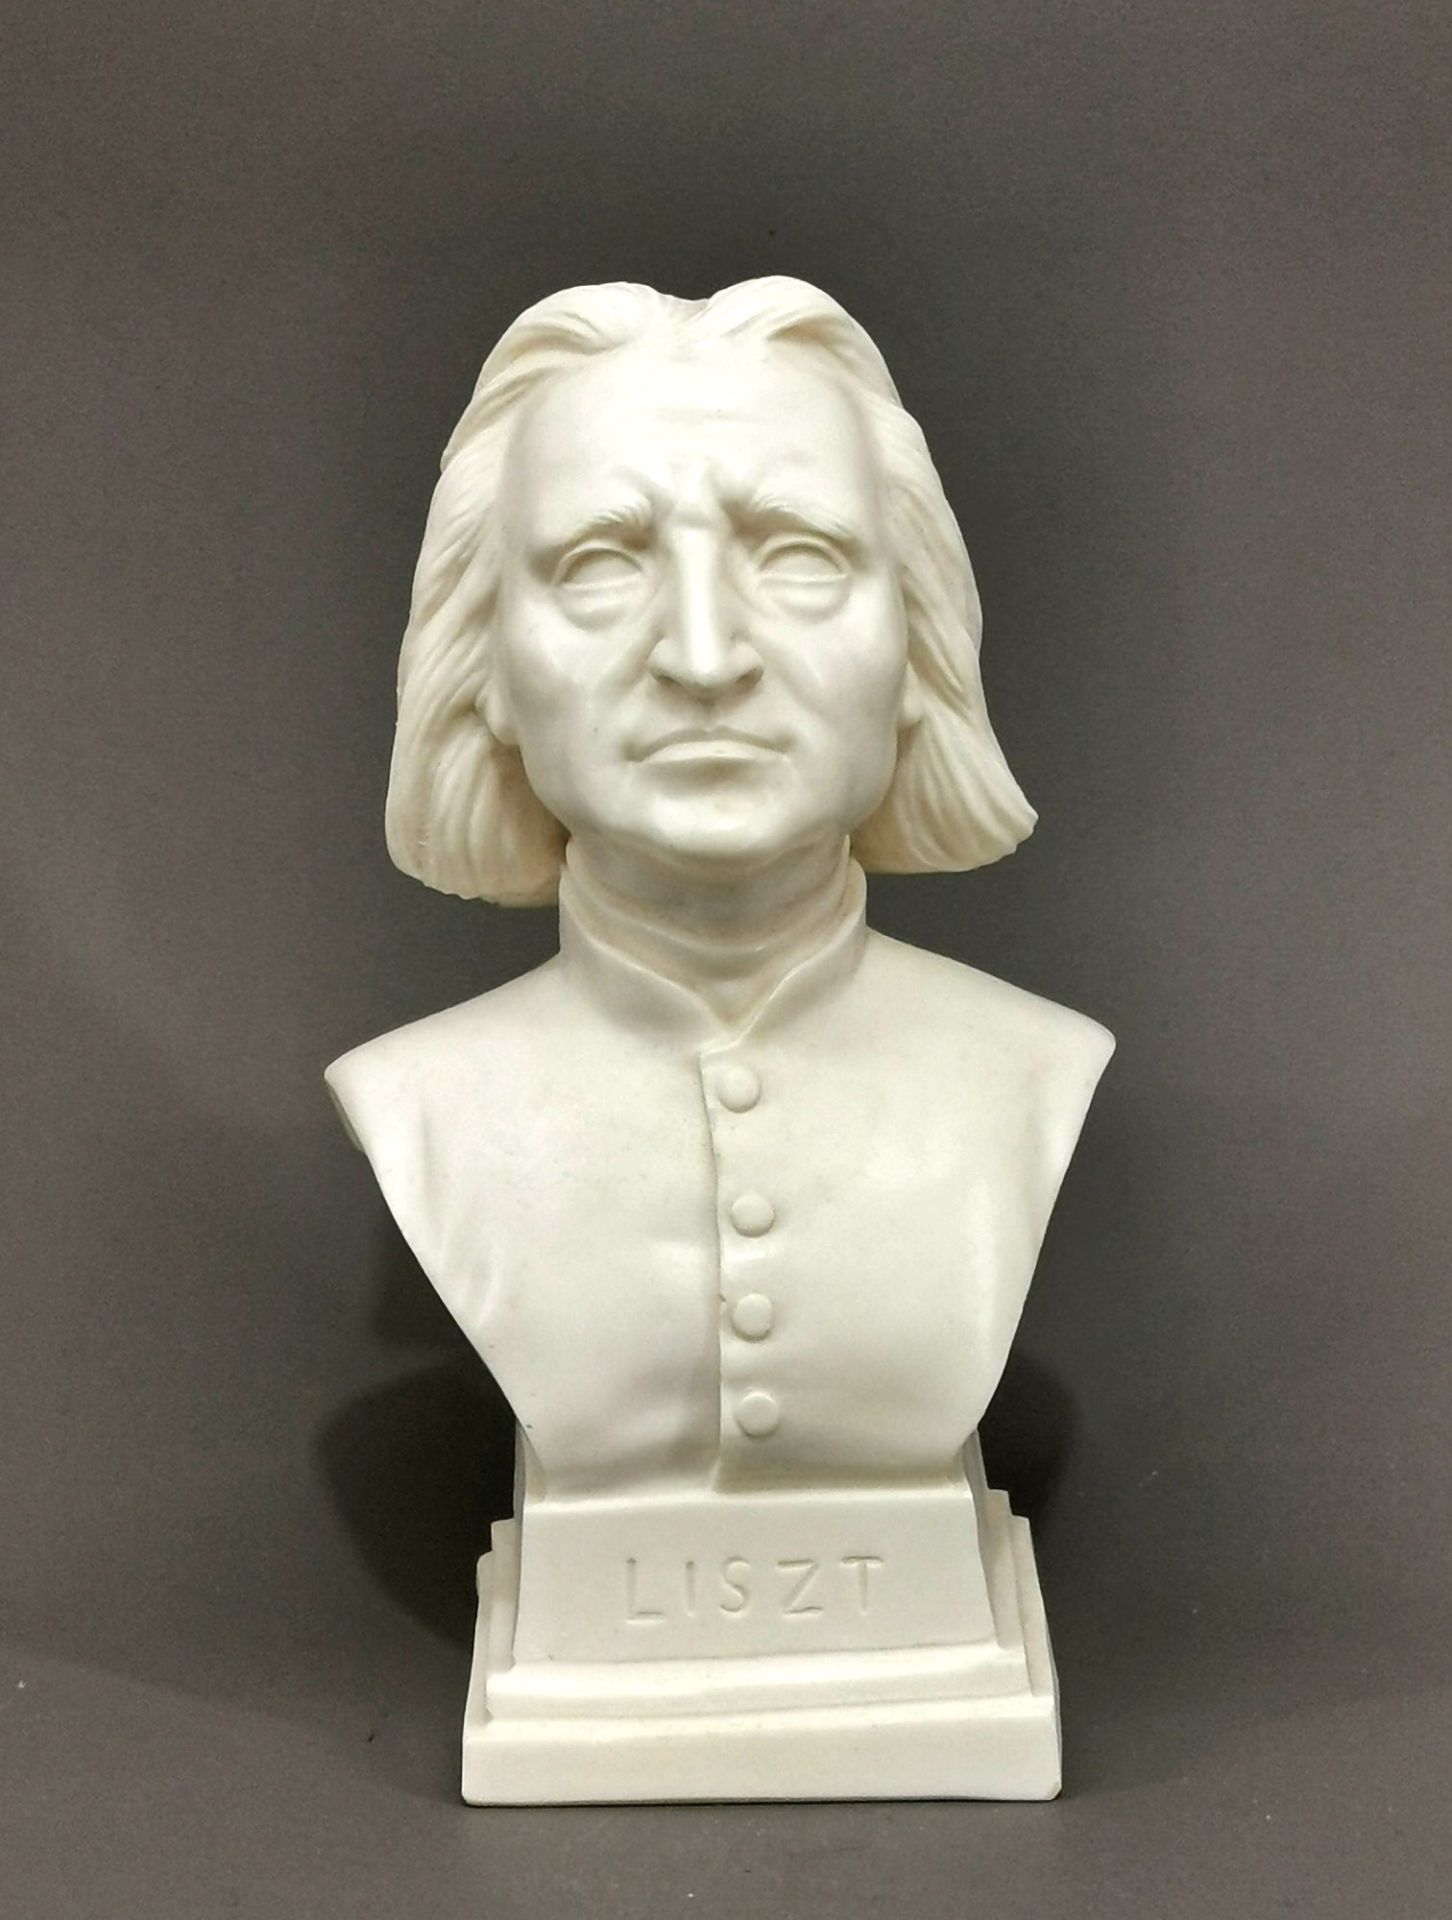 Büste Liszt